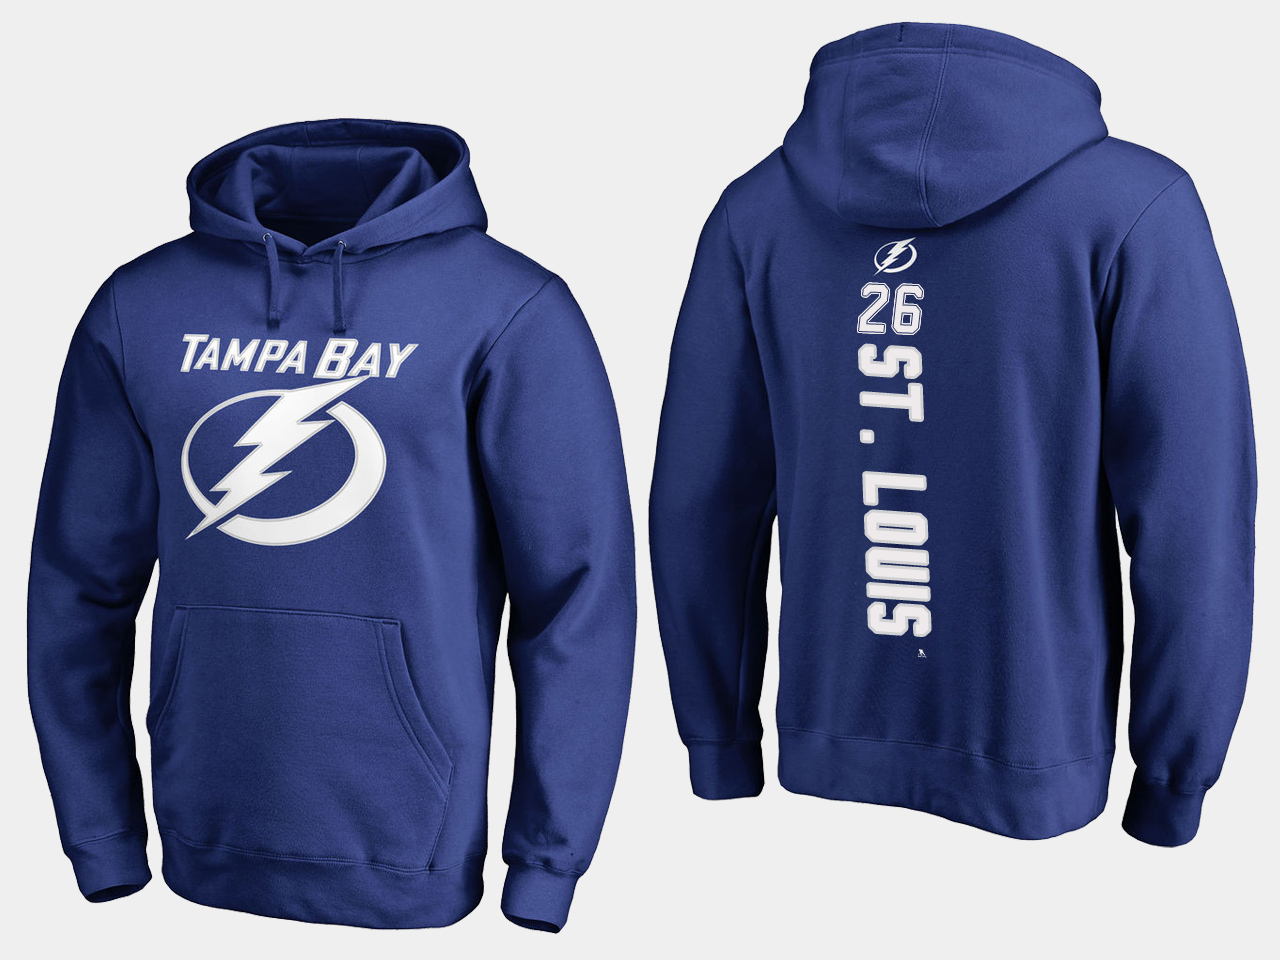 NHL Men adidas Tampa Bay Lightning #26 St Louis blue hoodie->tampa bay lightning->NHL Jersey